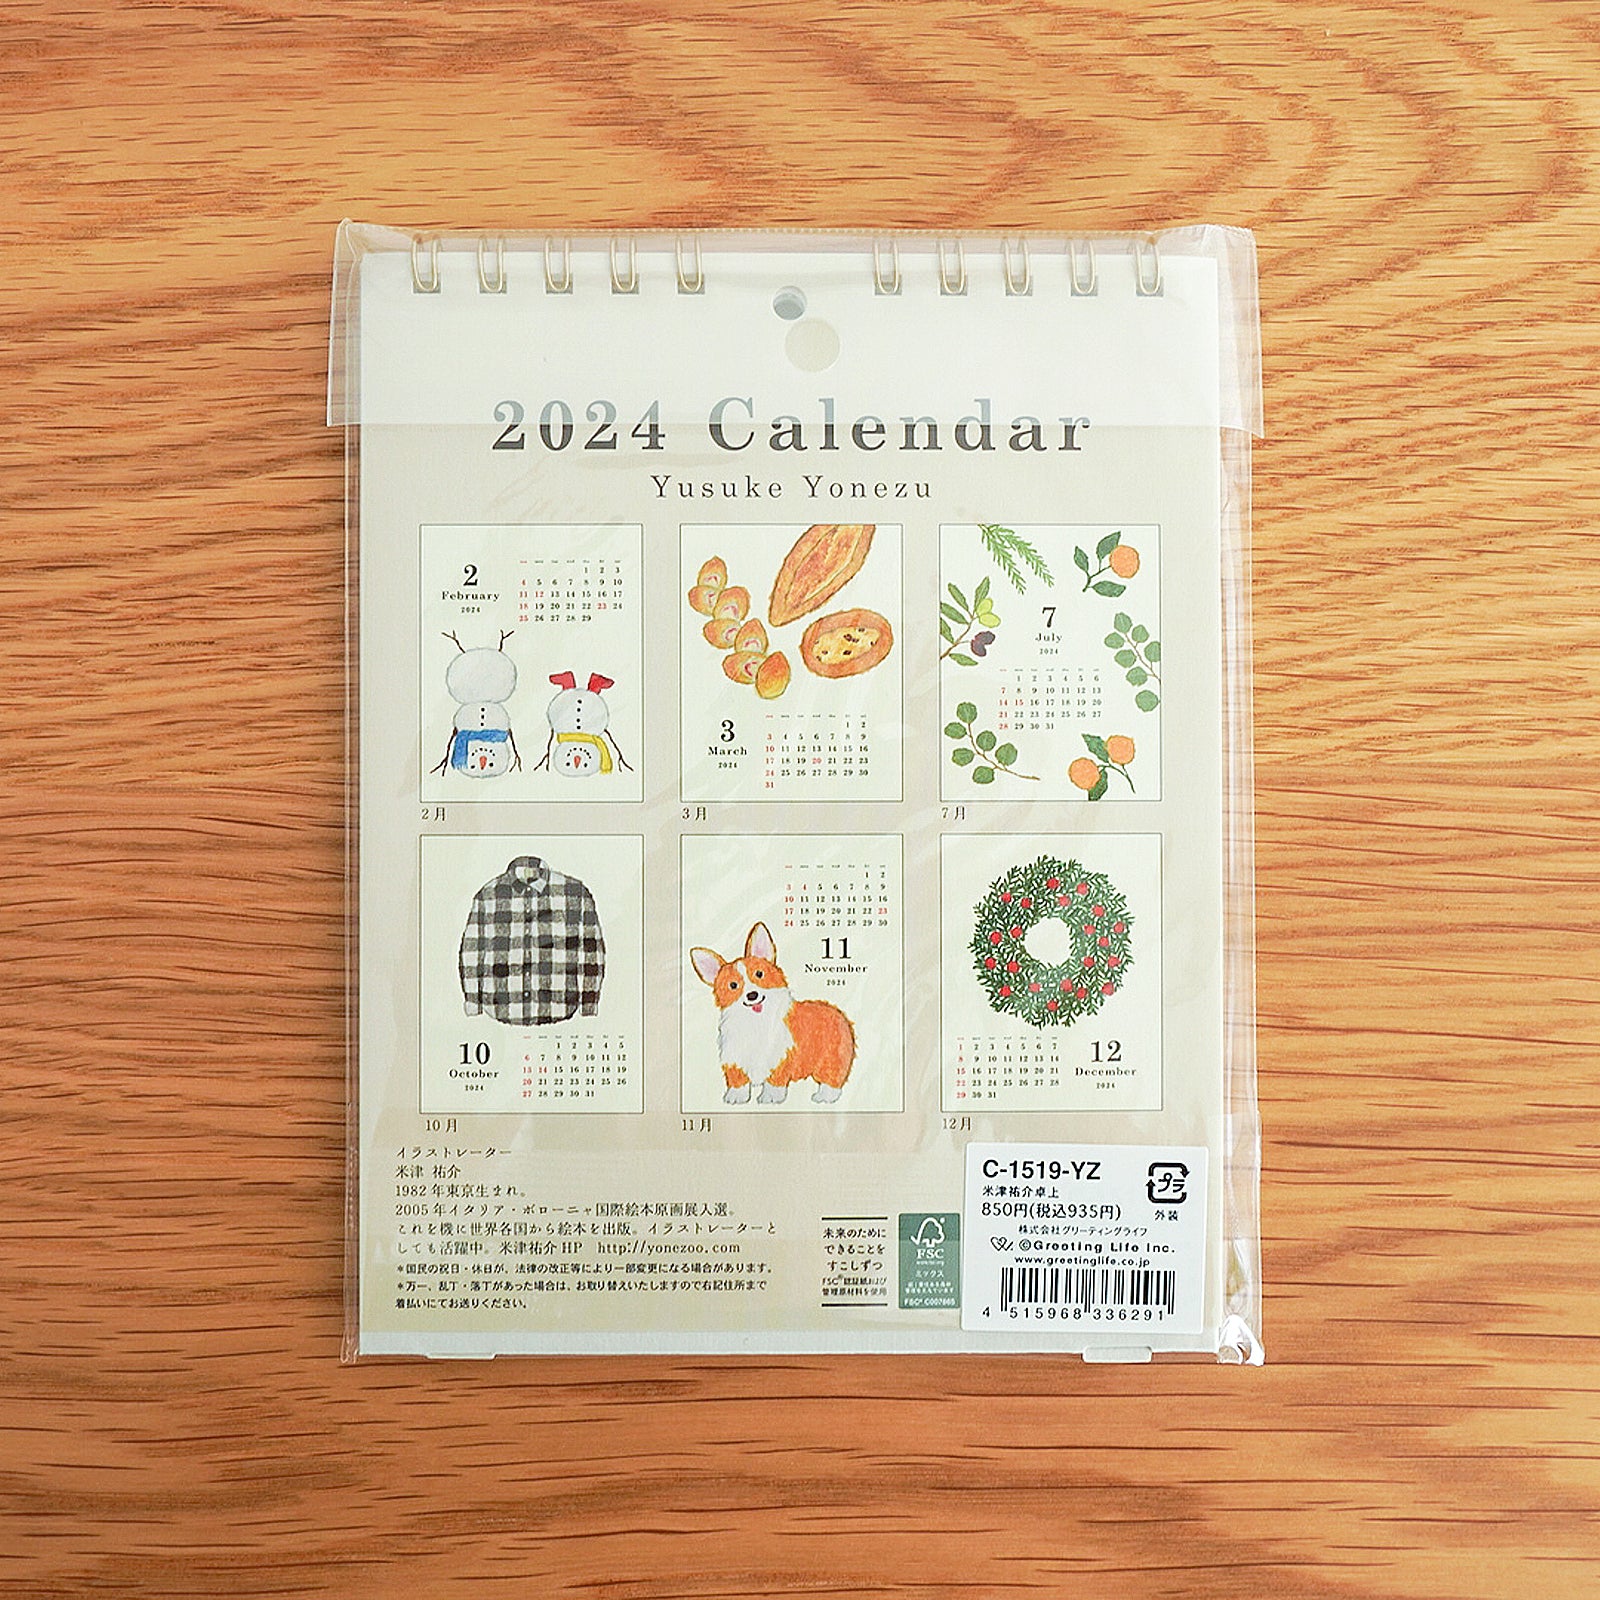 【2024カレンダー】米津祐介卓上カレンダー